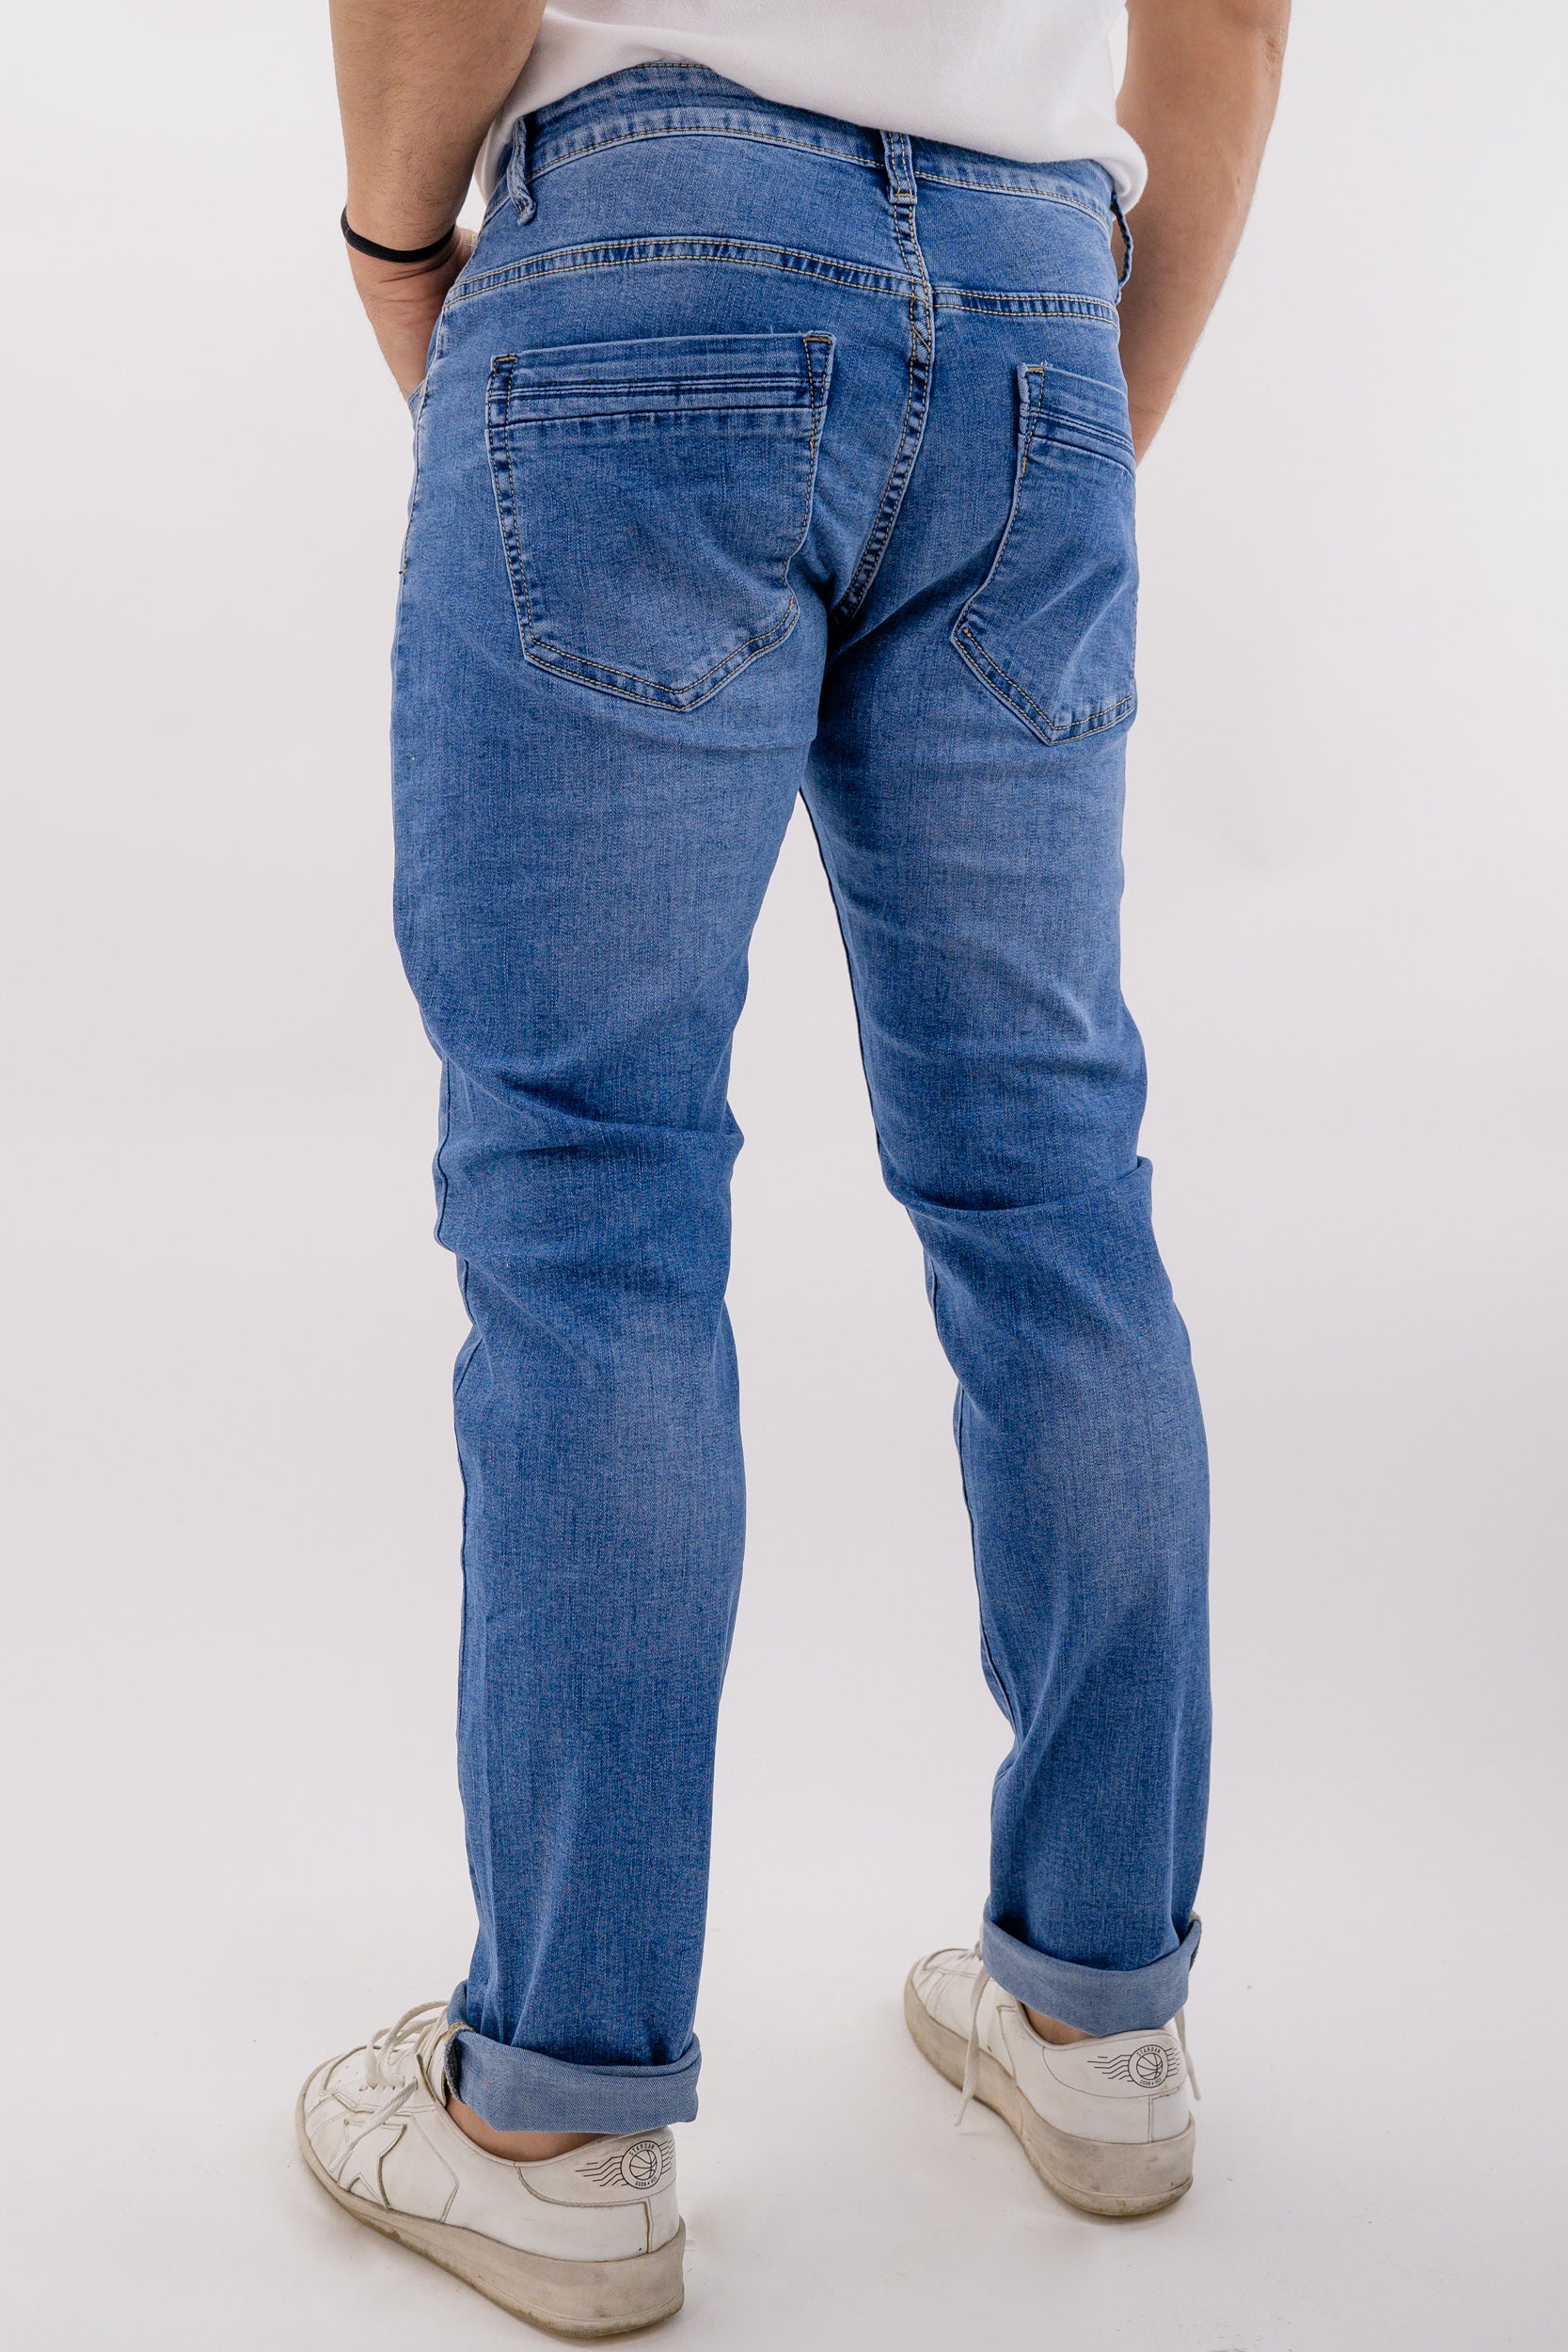 Jeans delavè elasticizzato modello cinque tasche